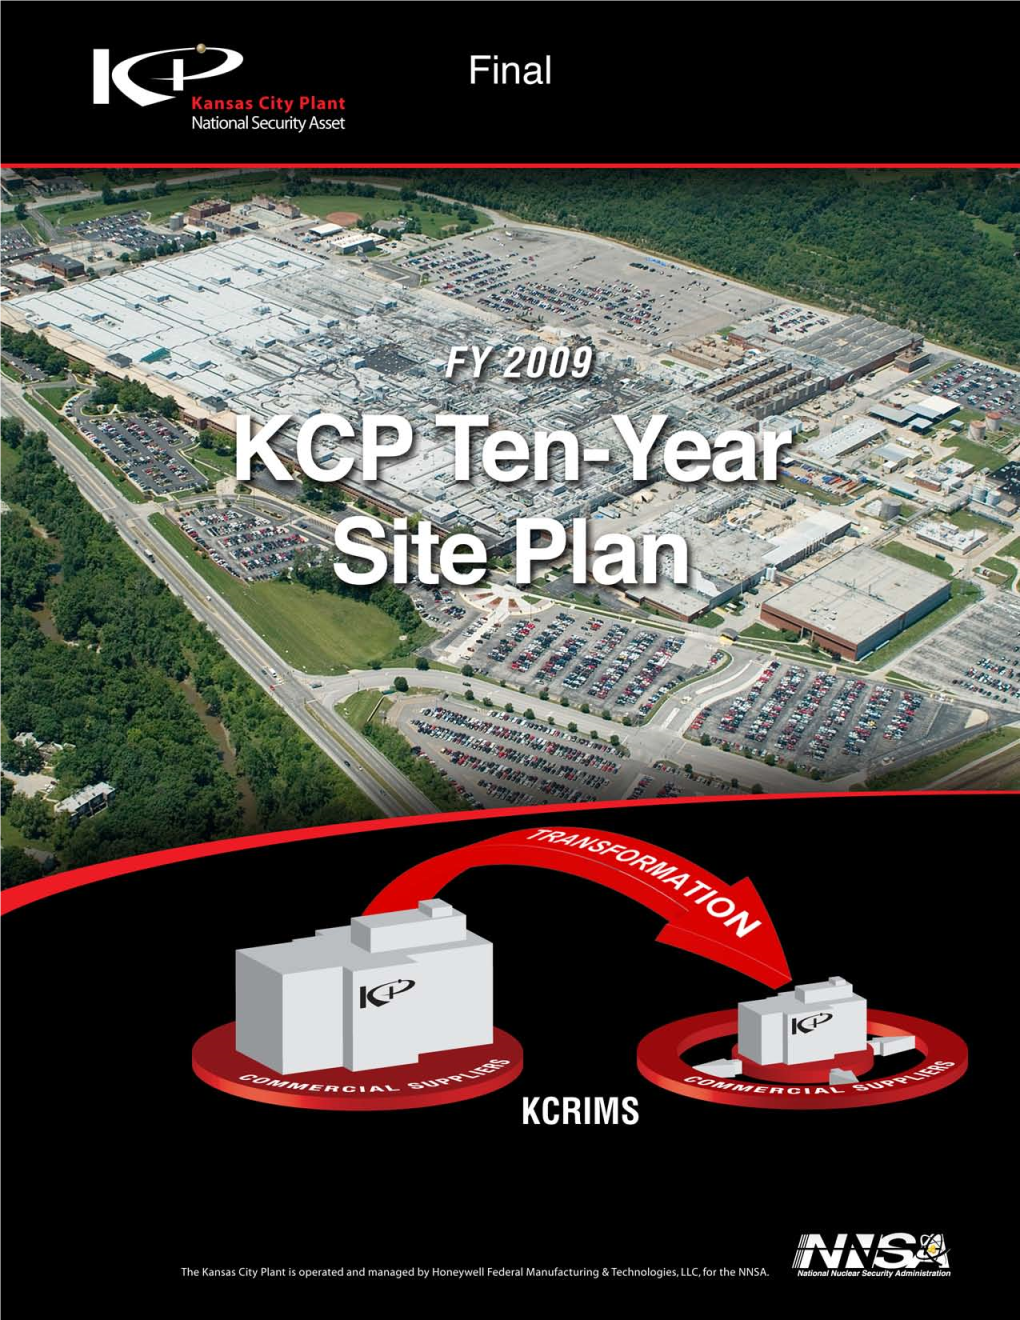 Kansas City Plant (KCP) Utilities